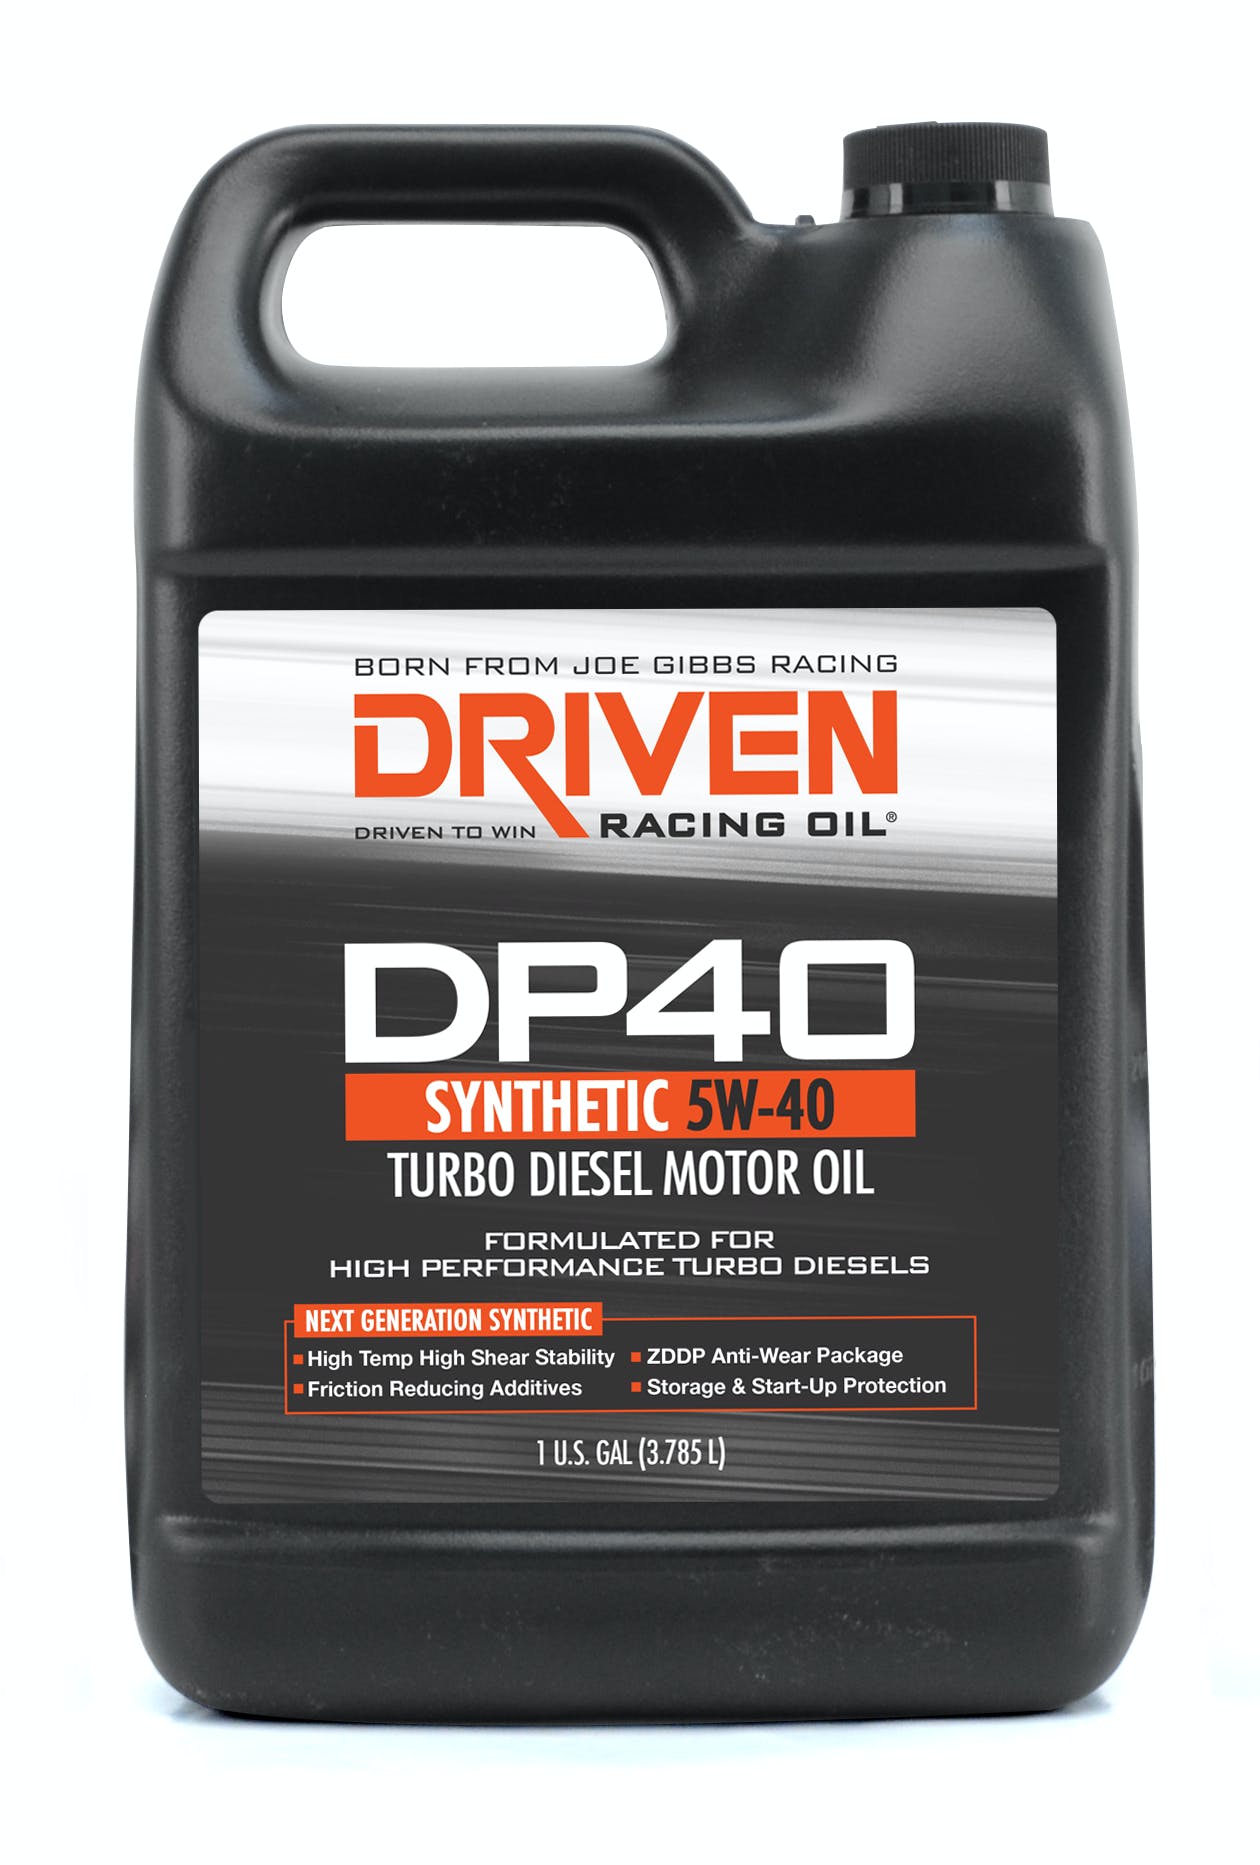 Driven Racing Oil 02508 DP40 5W-40 Turbo Diesel Motor Oil (1 gal. jug)